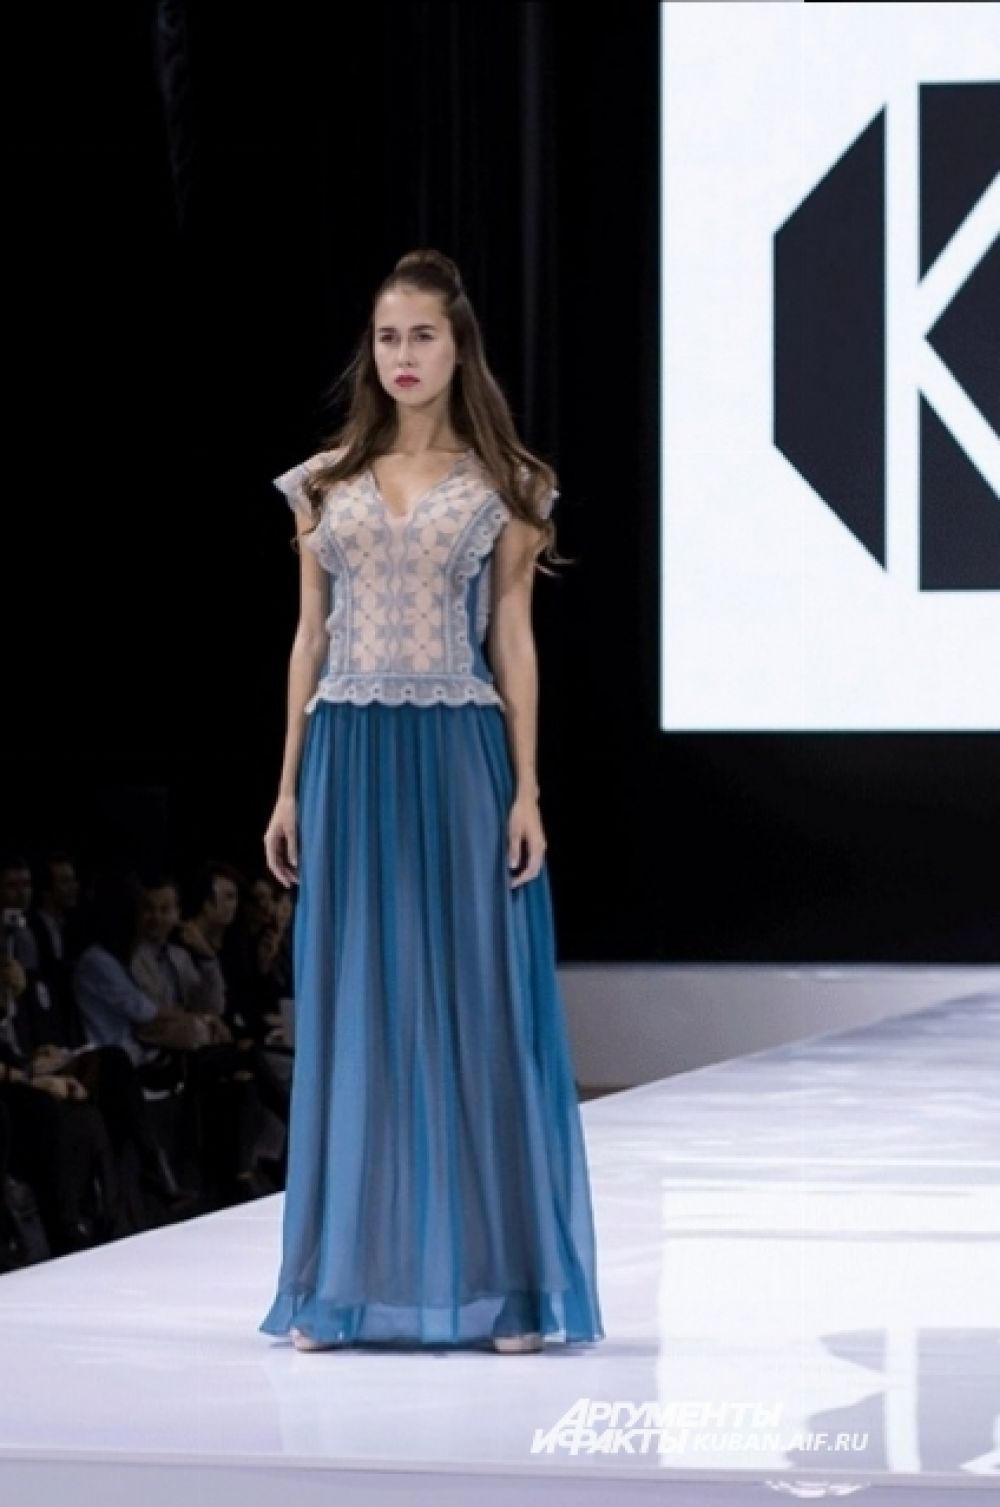 Известный российский дизайнер Ольга Куницына представила модель летнего платья в двух вариантах. Эта для тех, кто предпочитает холодные цвета.